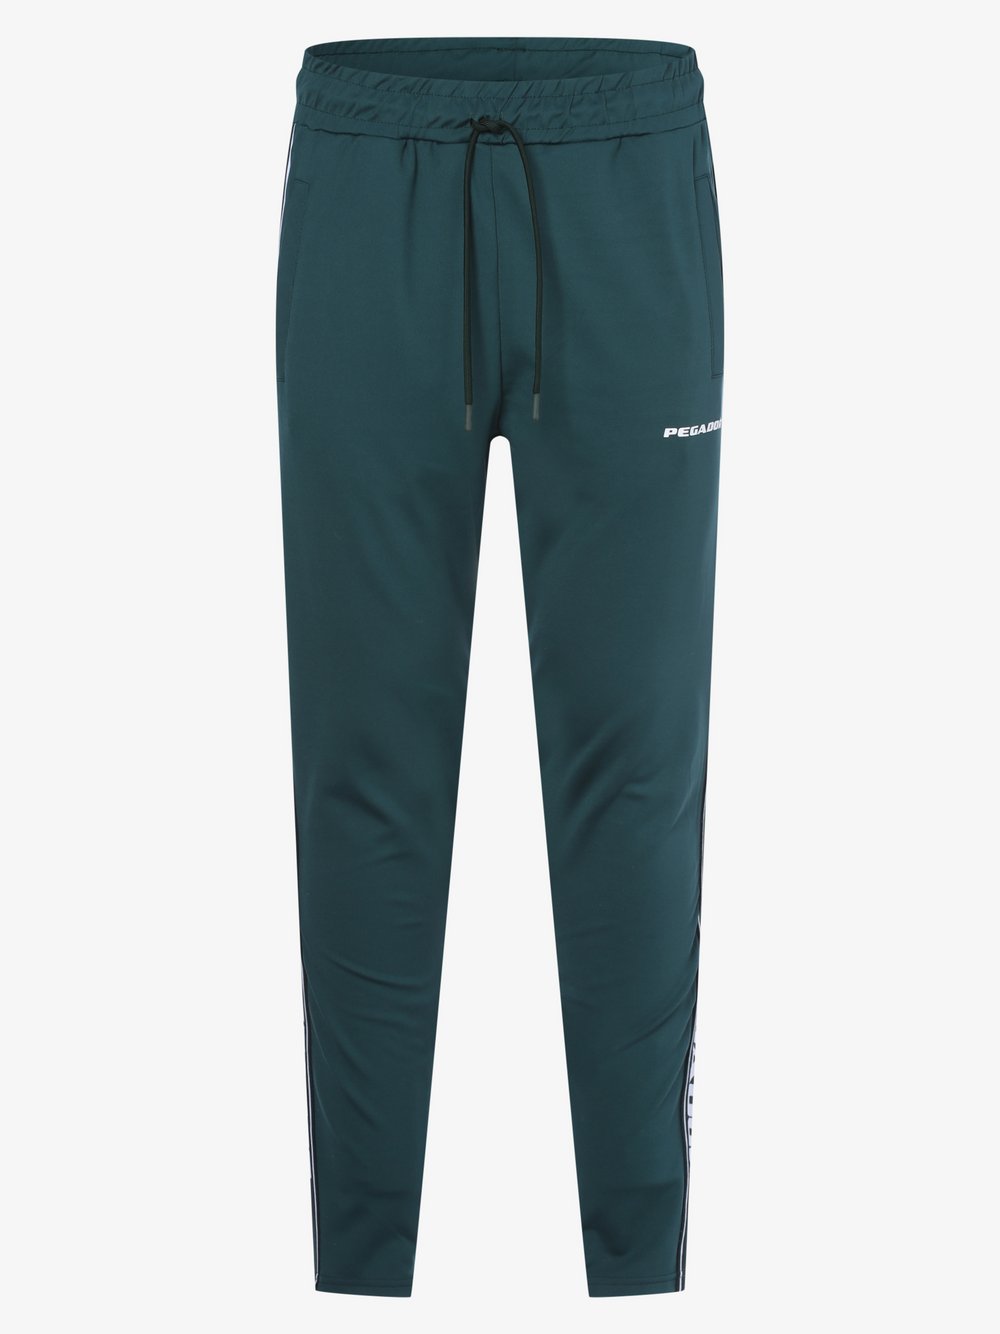 PEGADOR - Spodnie dresowe męskie, zielony